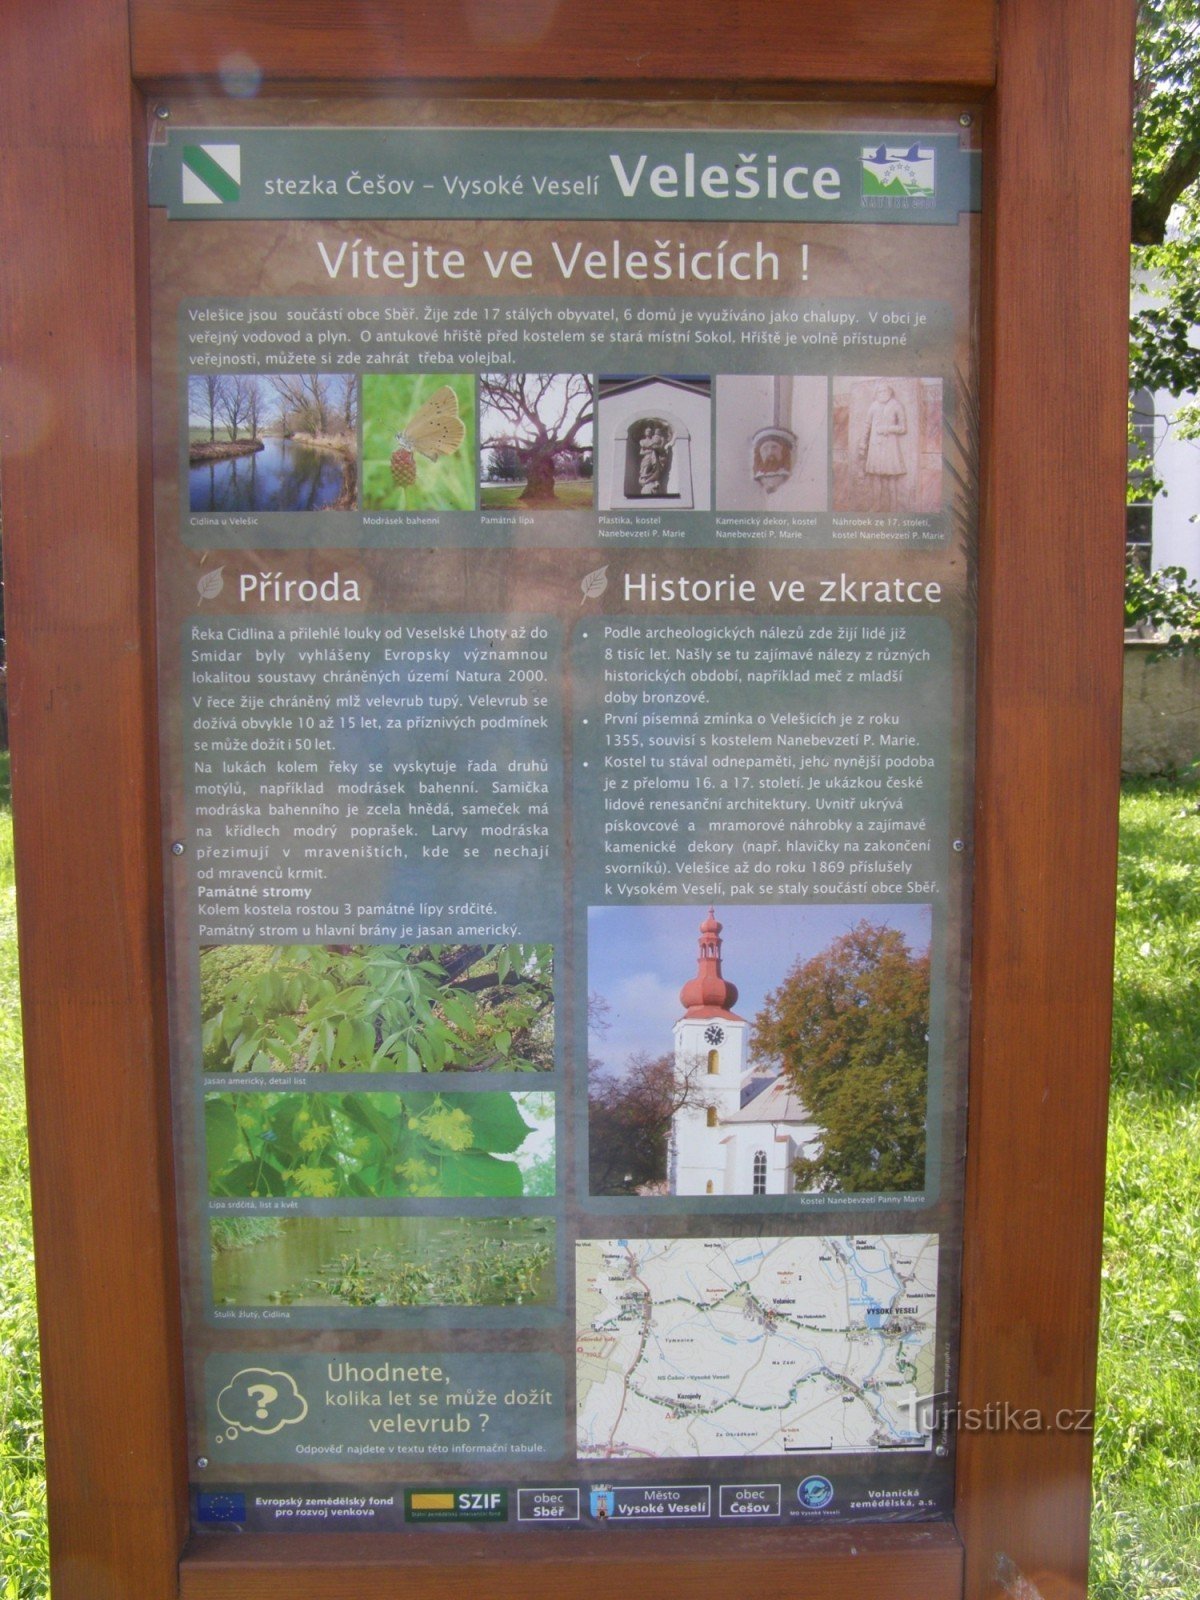 NS Češov-Vysoké Veselí - Velešice の交差点